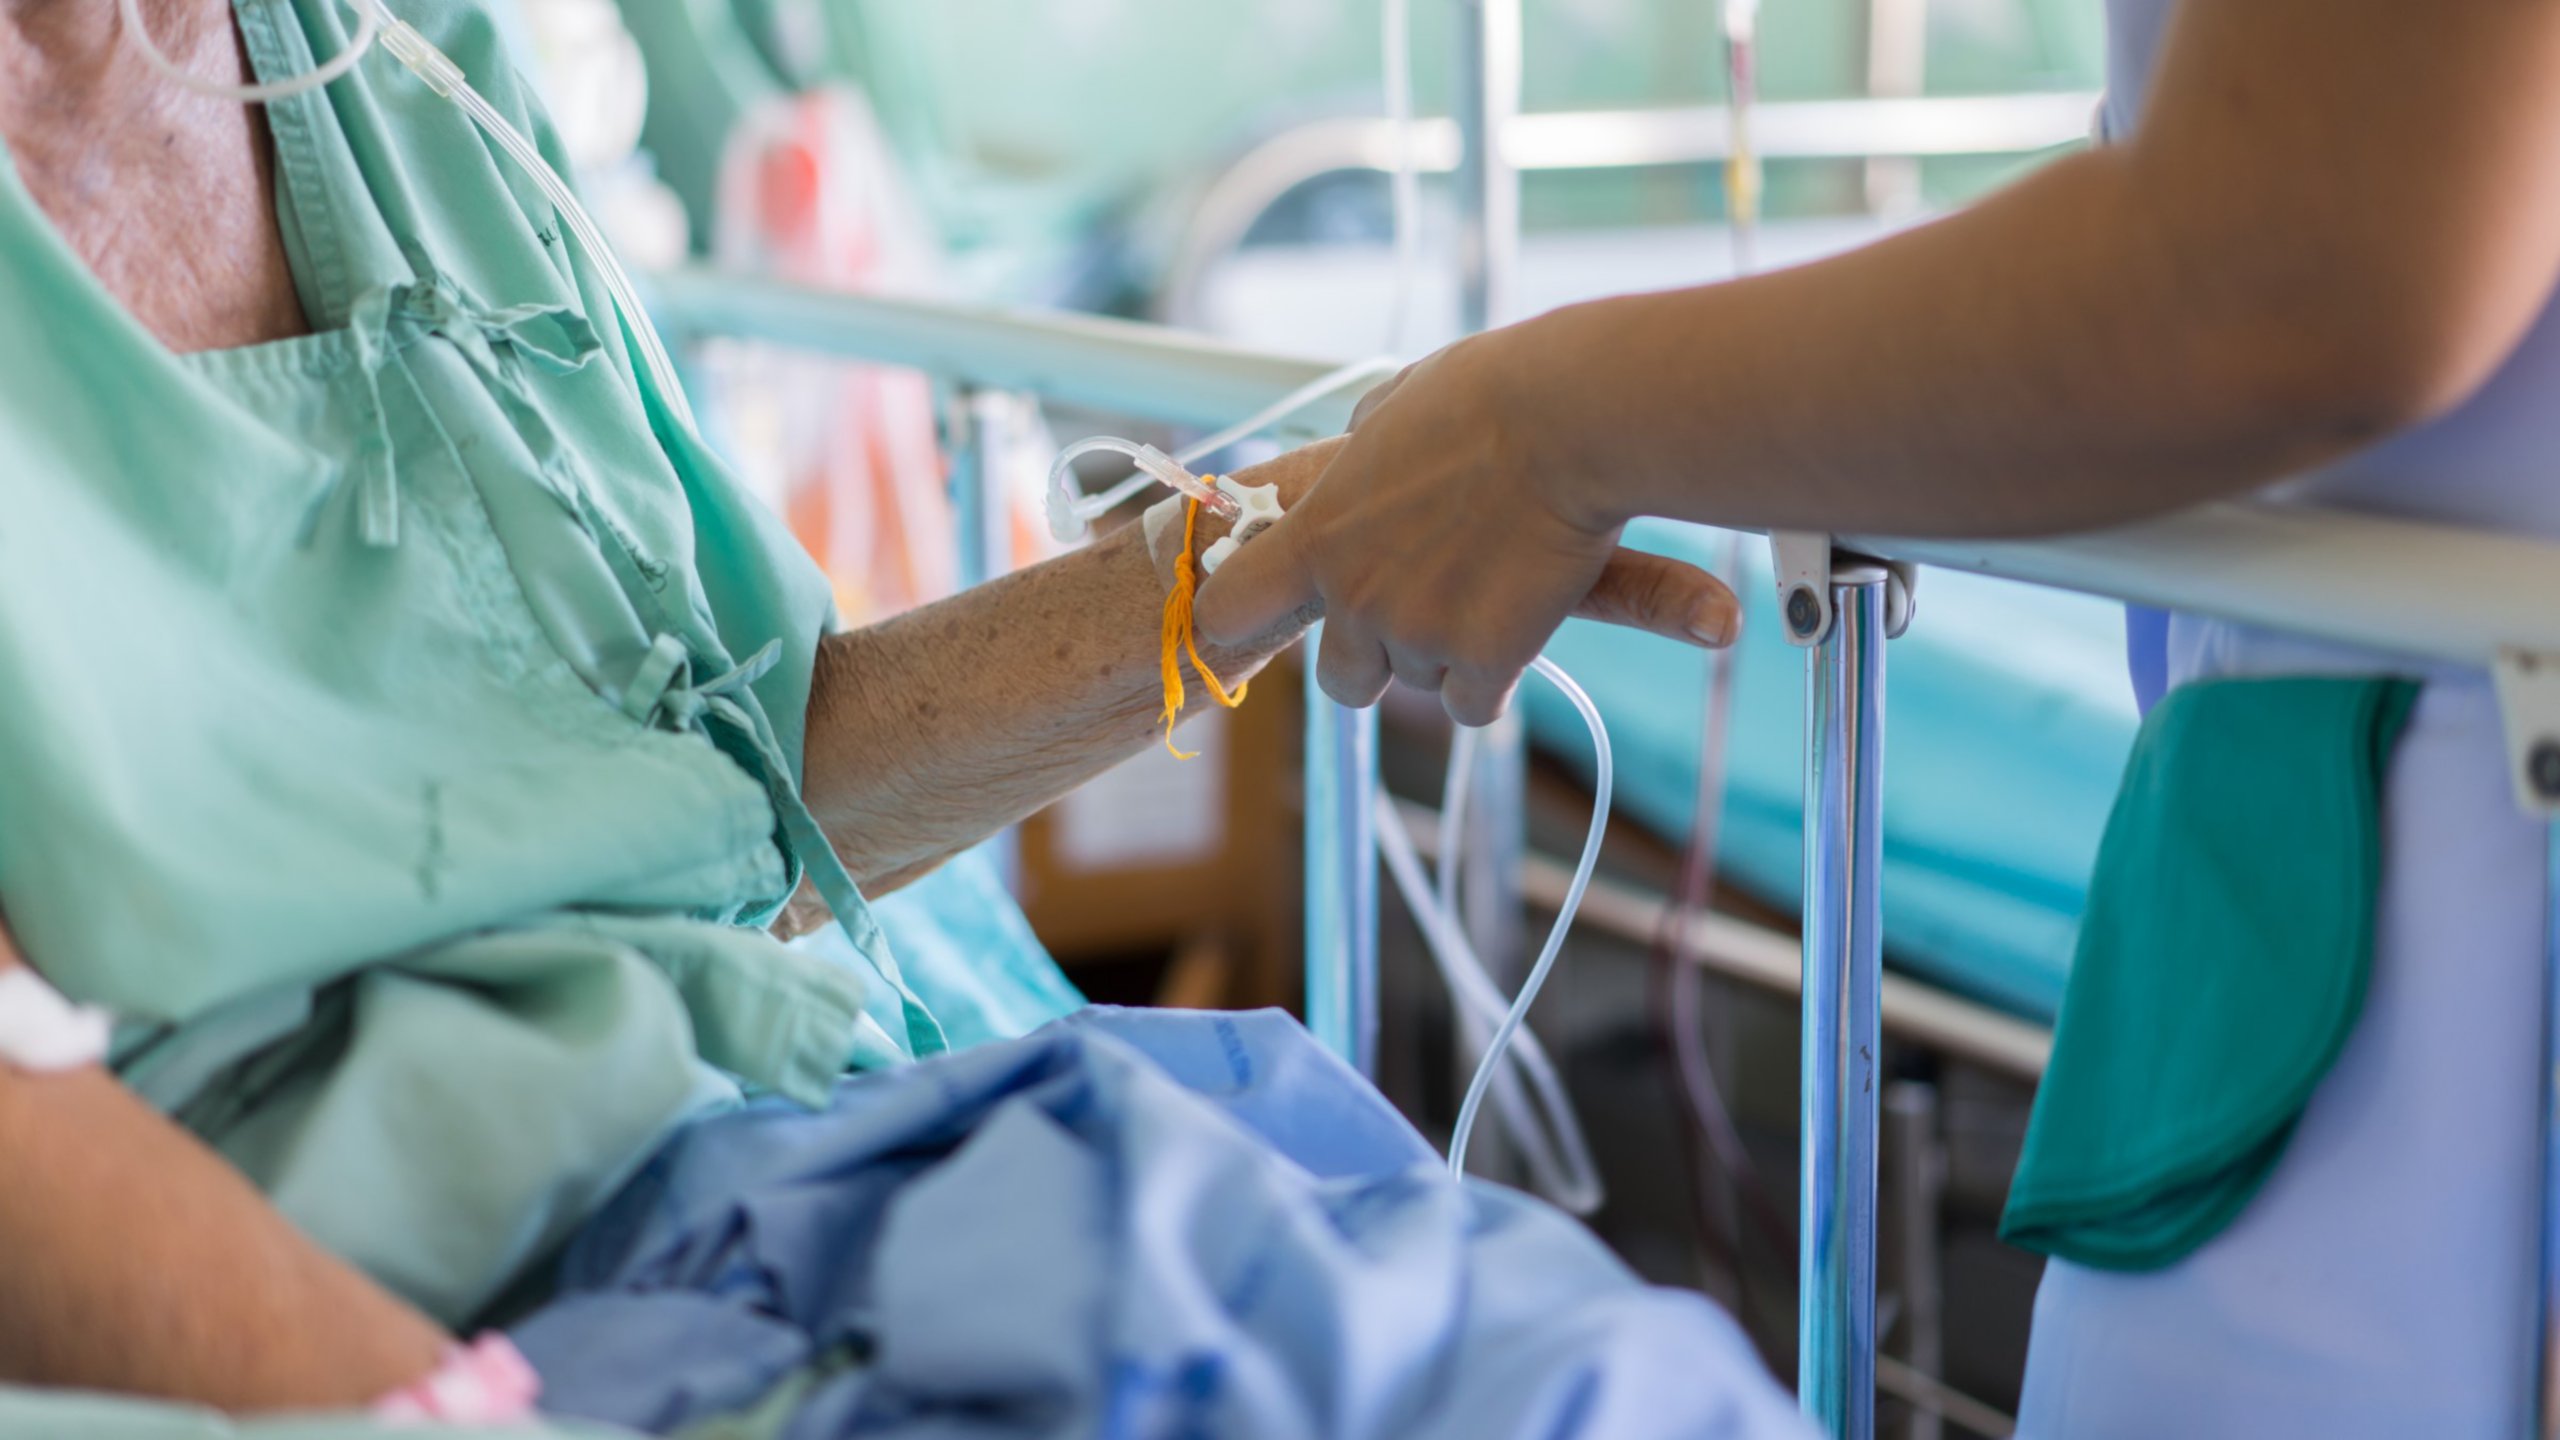 Um profissional da área médica ao lado do leito de um paciente idoso termina de colocar um cateter intravenoso no braço do paciente.